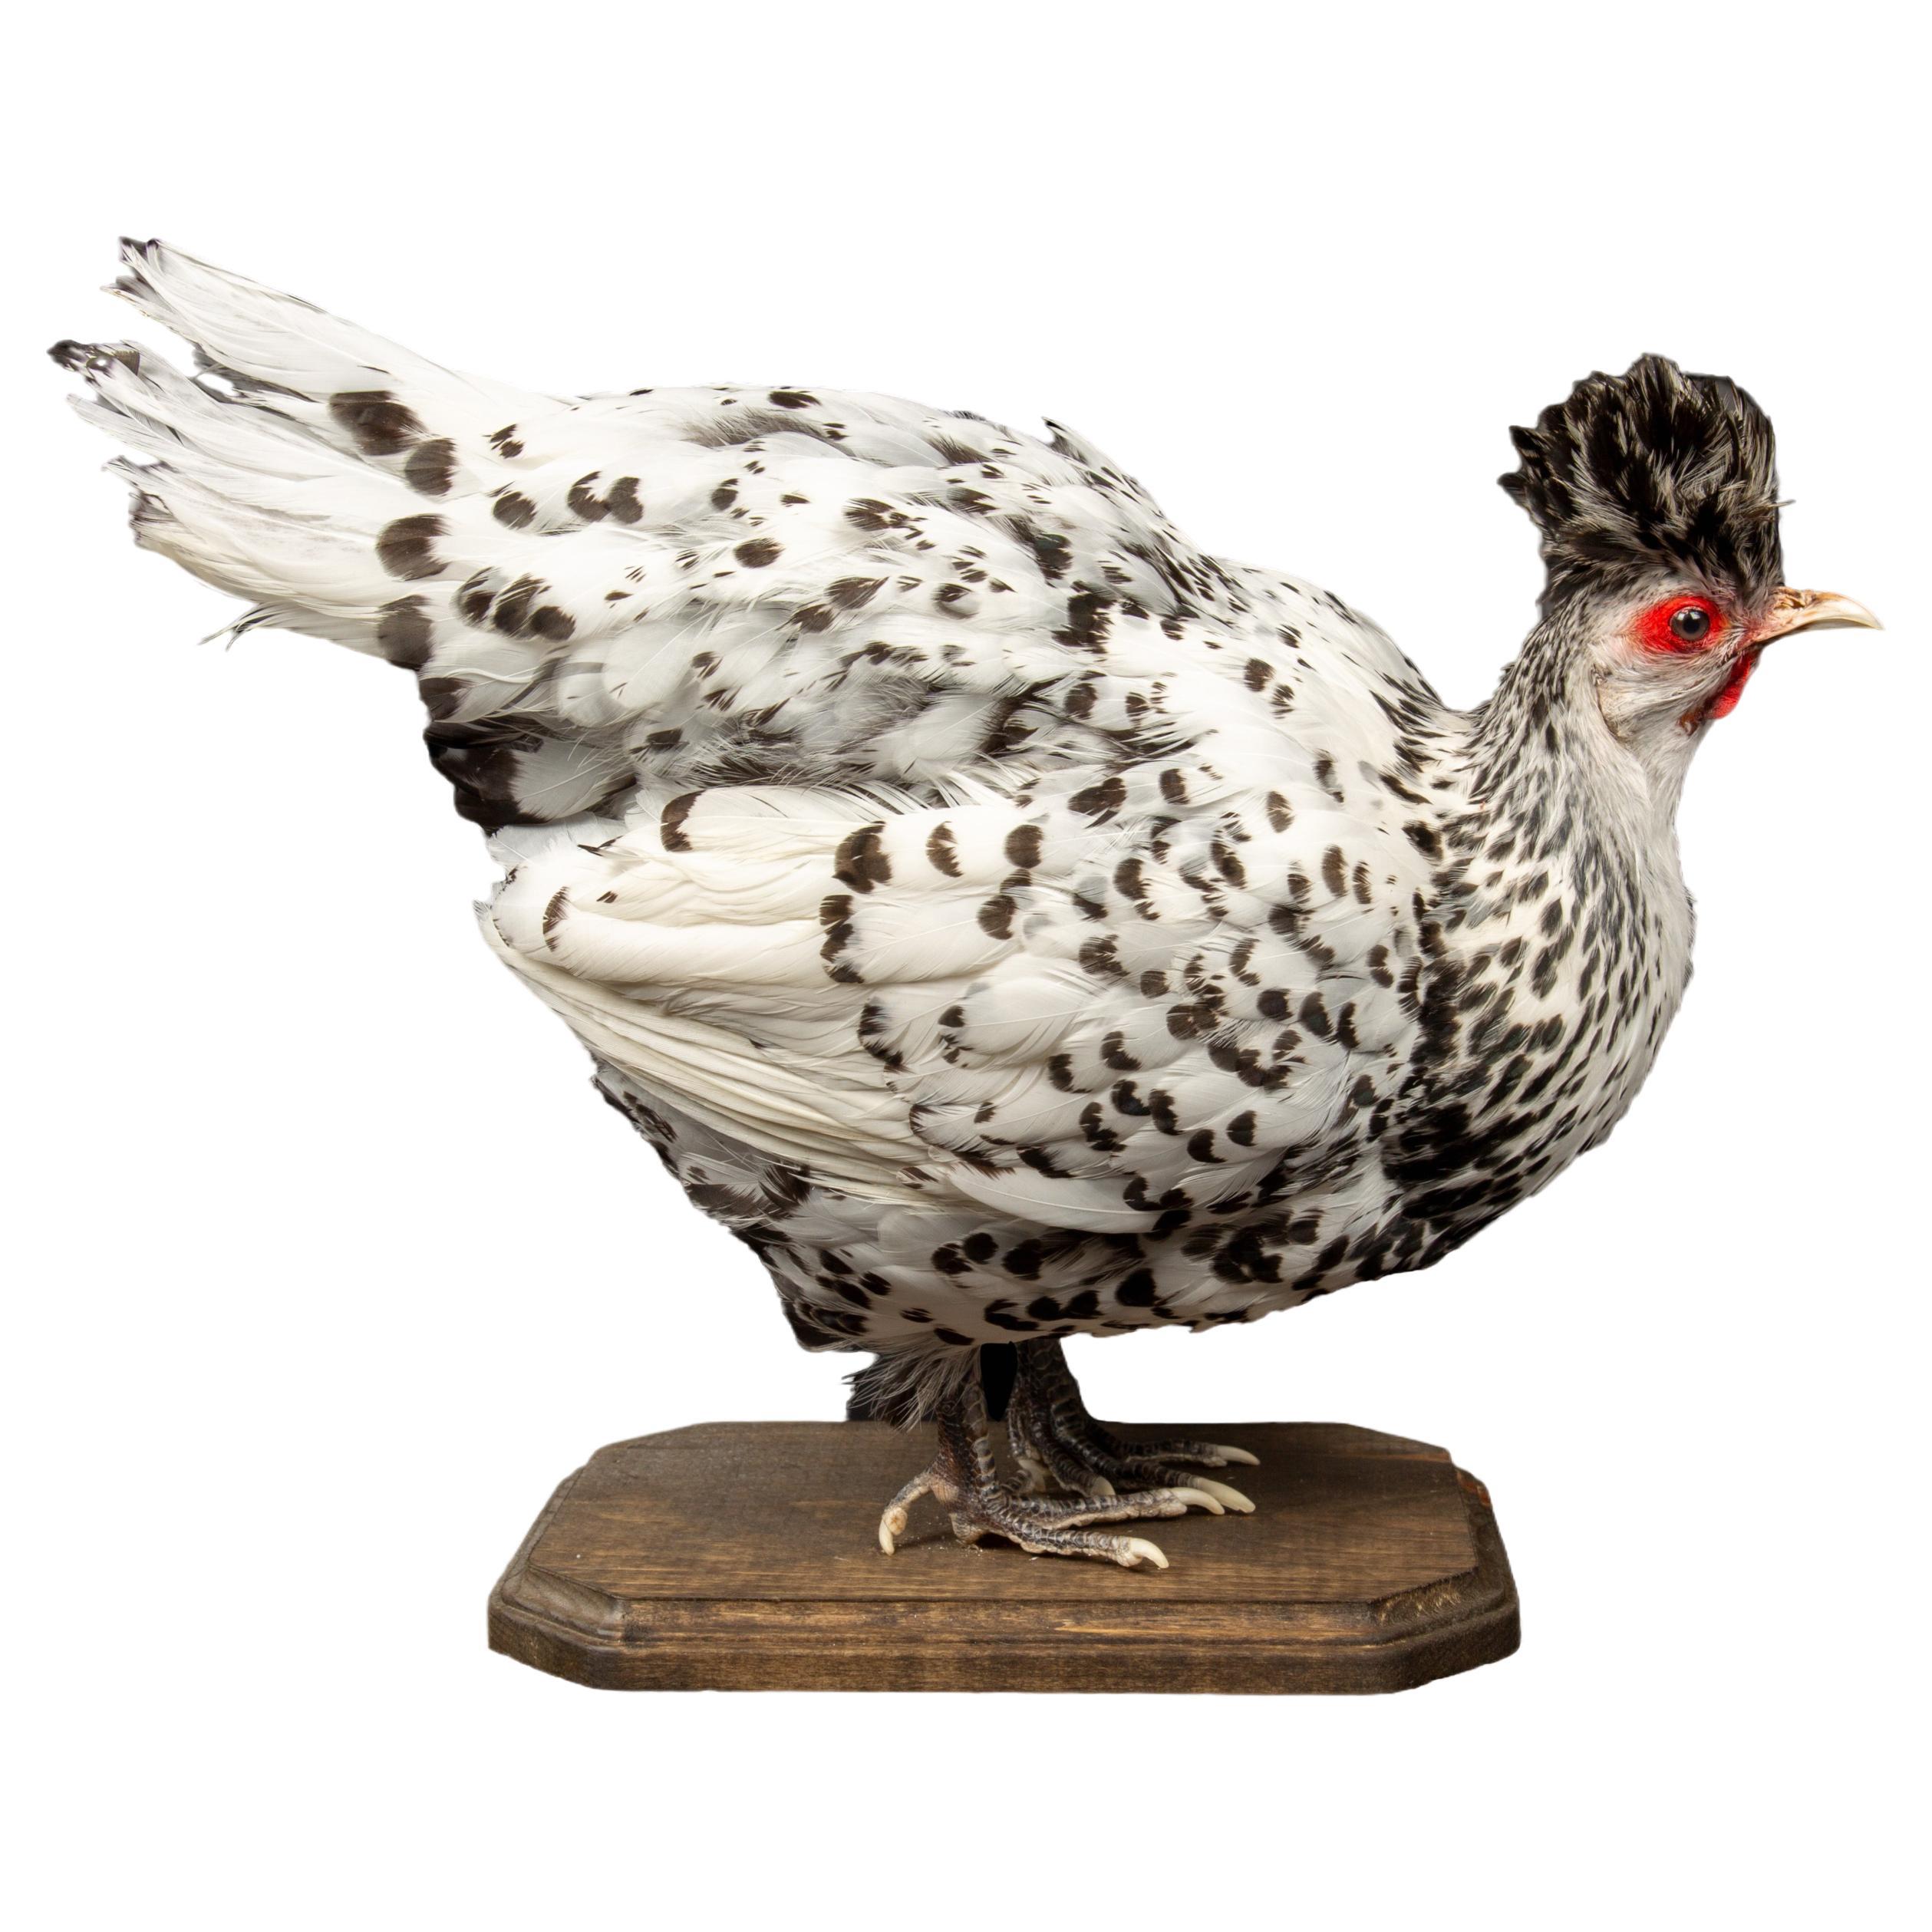 Taxidermy Black and White Appenzeller Spitzhauben Chicken